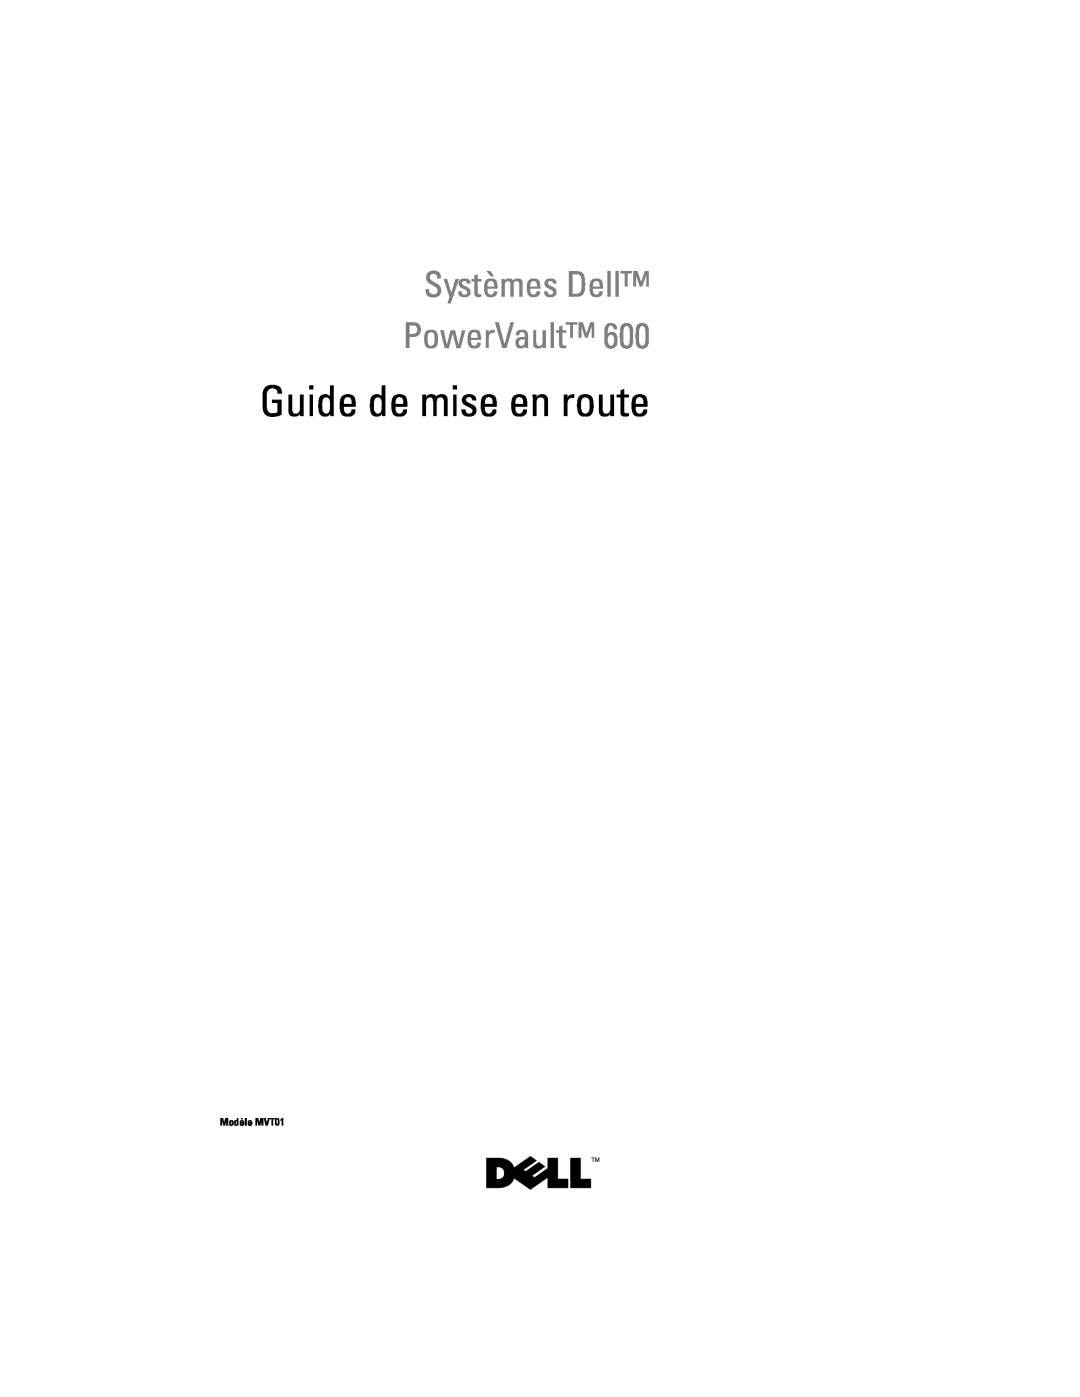 Dell CX193 manual Systèmes Dell PowerVault, Guide de mise en route, Modèle MVT01 